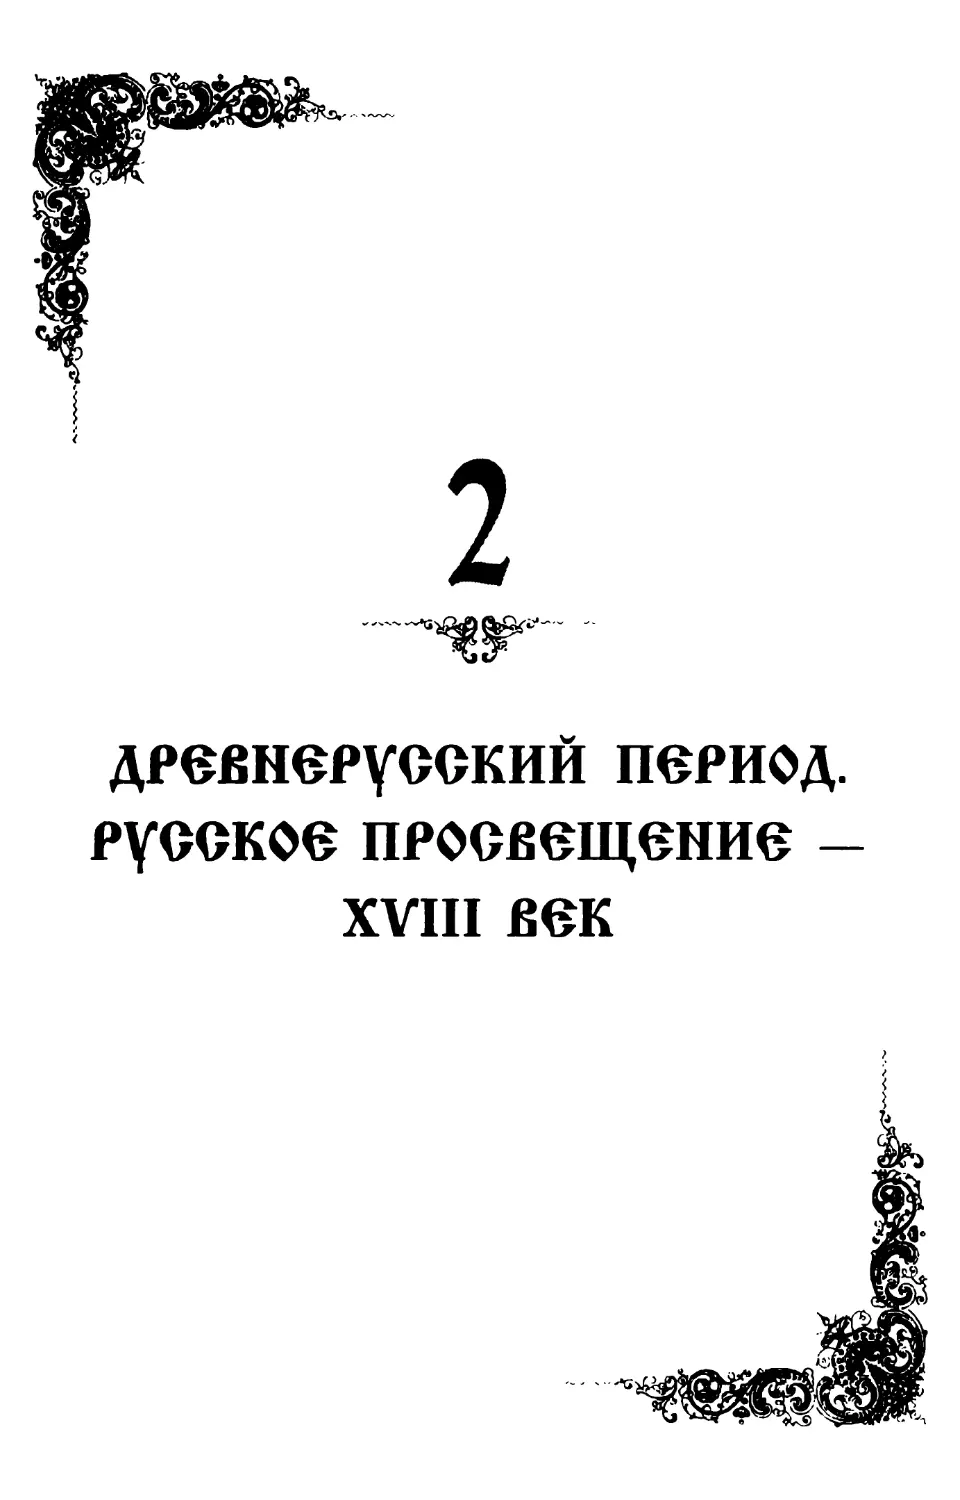 2. Древнерусский период. Русское просвещение - XVIII век